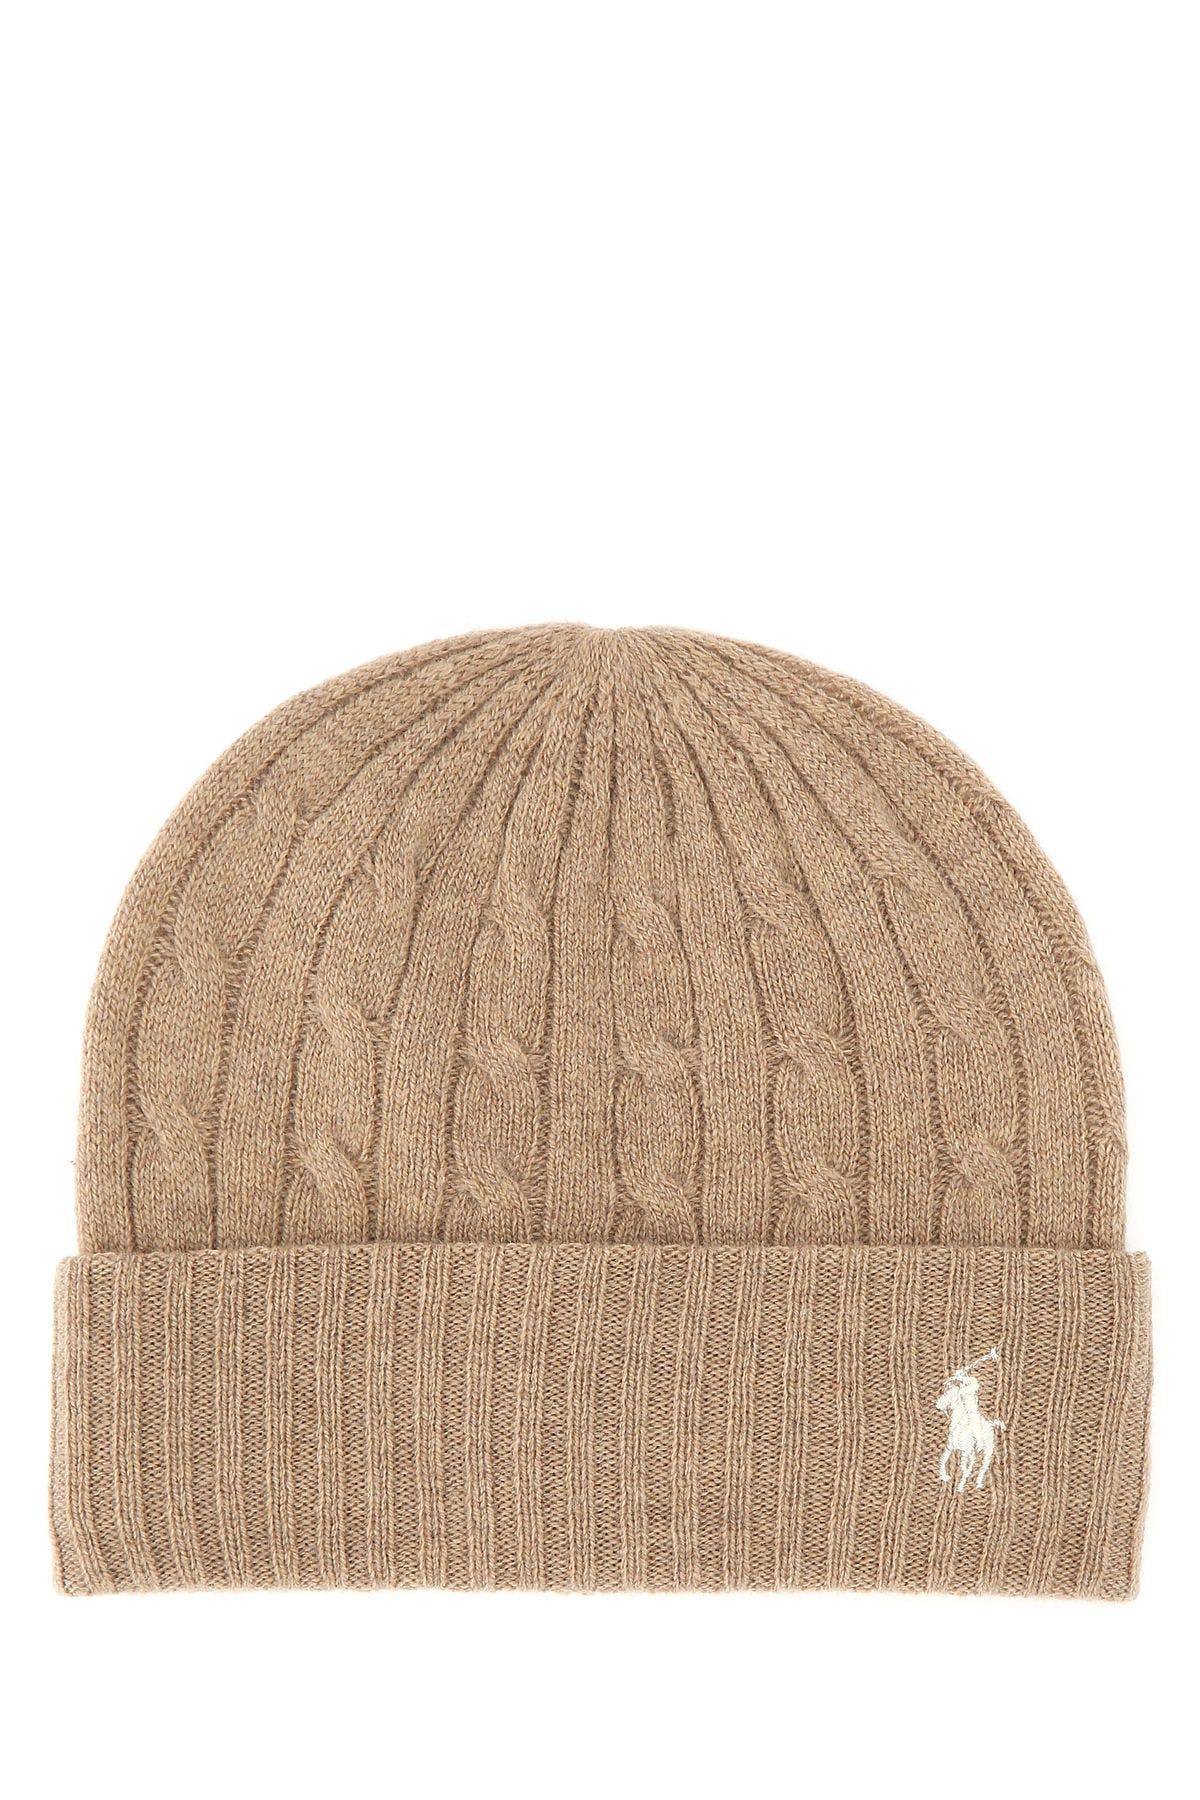 Ralph Lauren Beige Wool Blend Beanie Hat